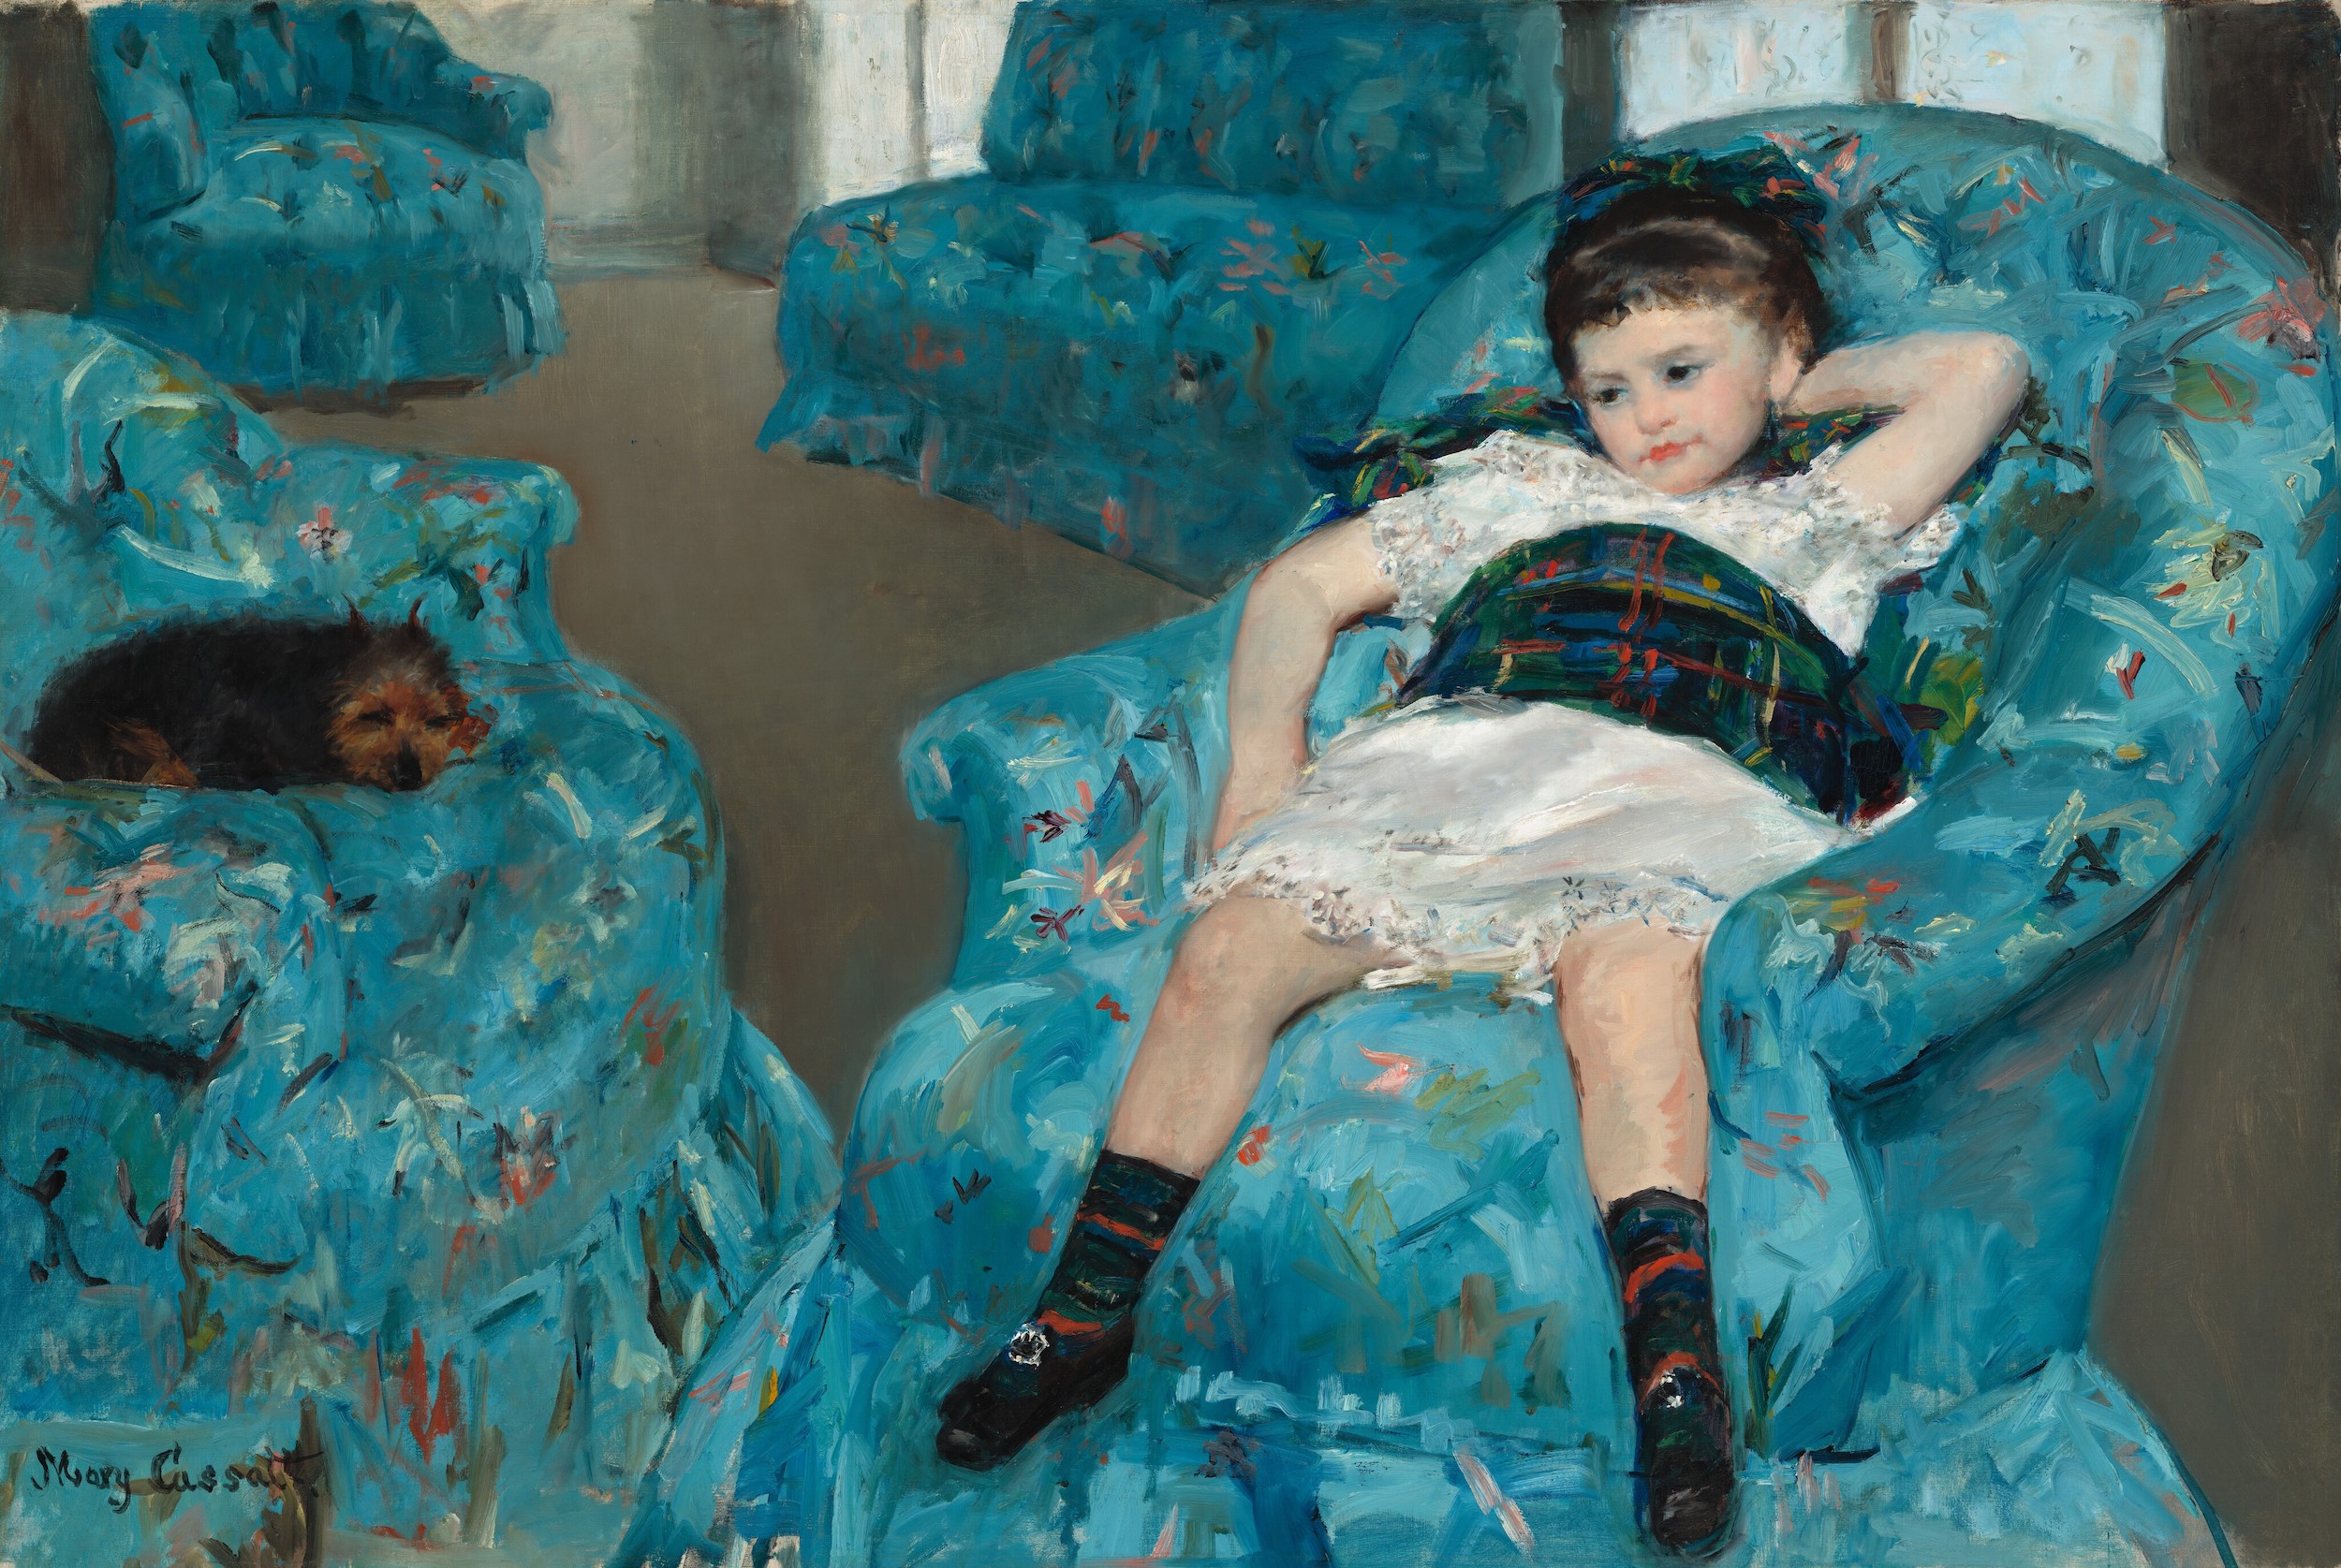 青いひじ掛け椅子の少女 by Mary Cassatt - 1878年 - 129.8 x 89.5 cm 